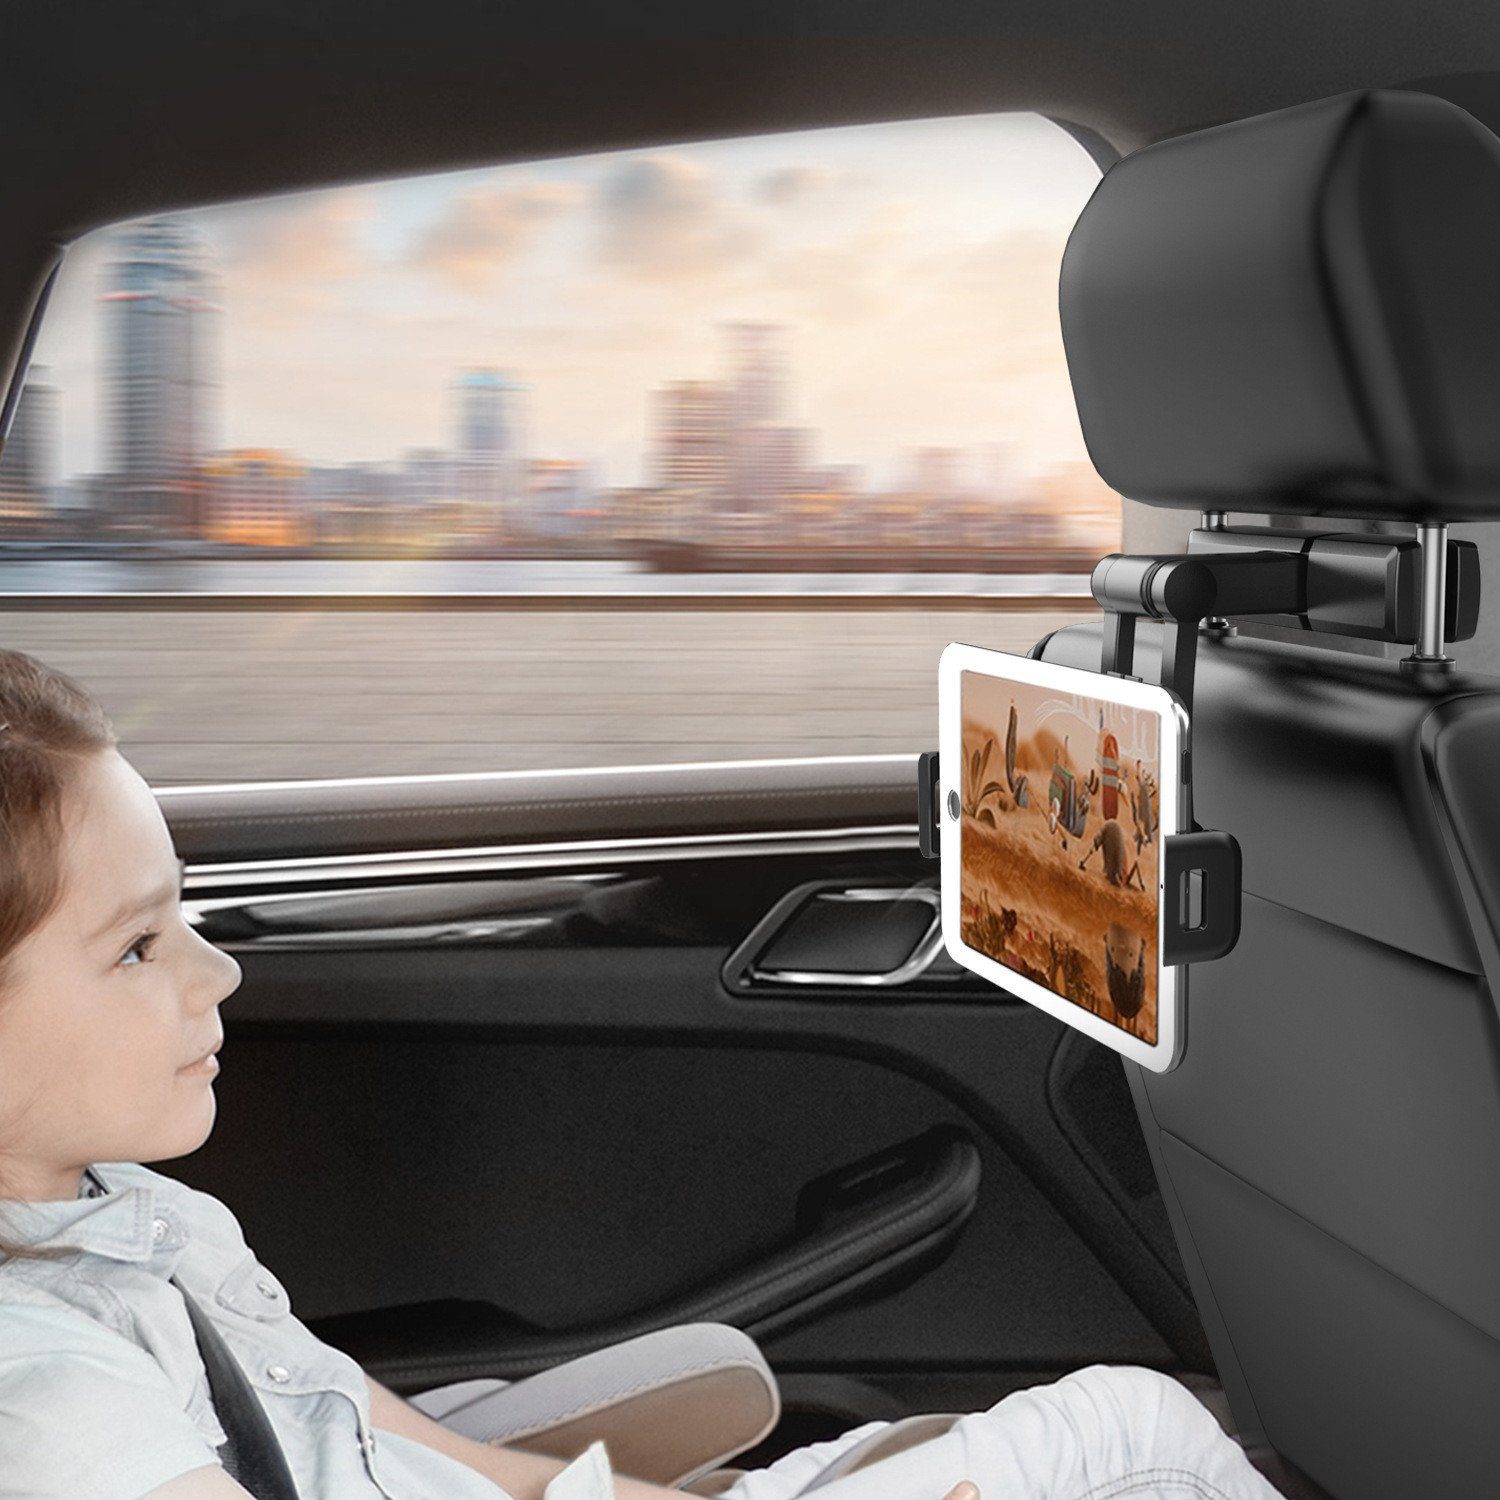 Premium Auto Zurück Sitz Kopfstütze Halterung Halter Ständer Unterstützung  Für 7-11 Zoll Tablet/iPad 234